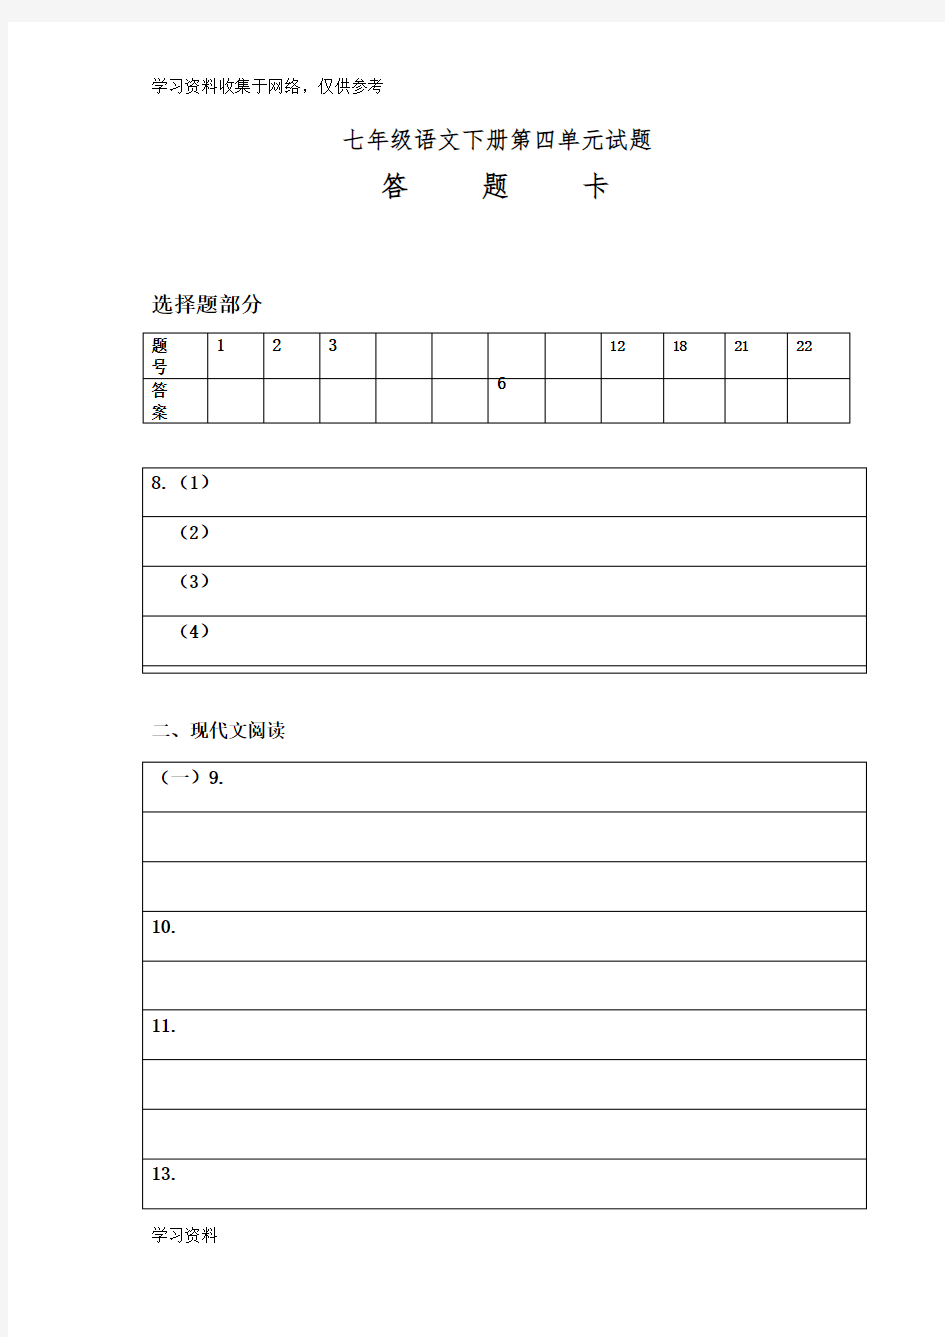 初中语文考试答题卡样式